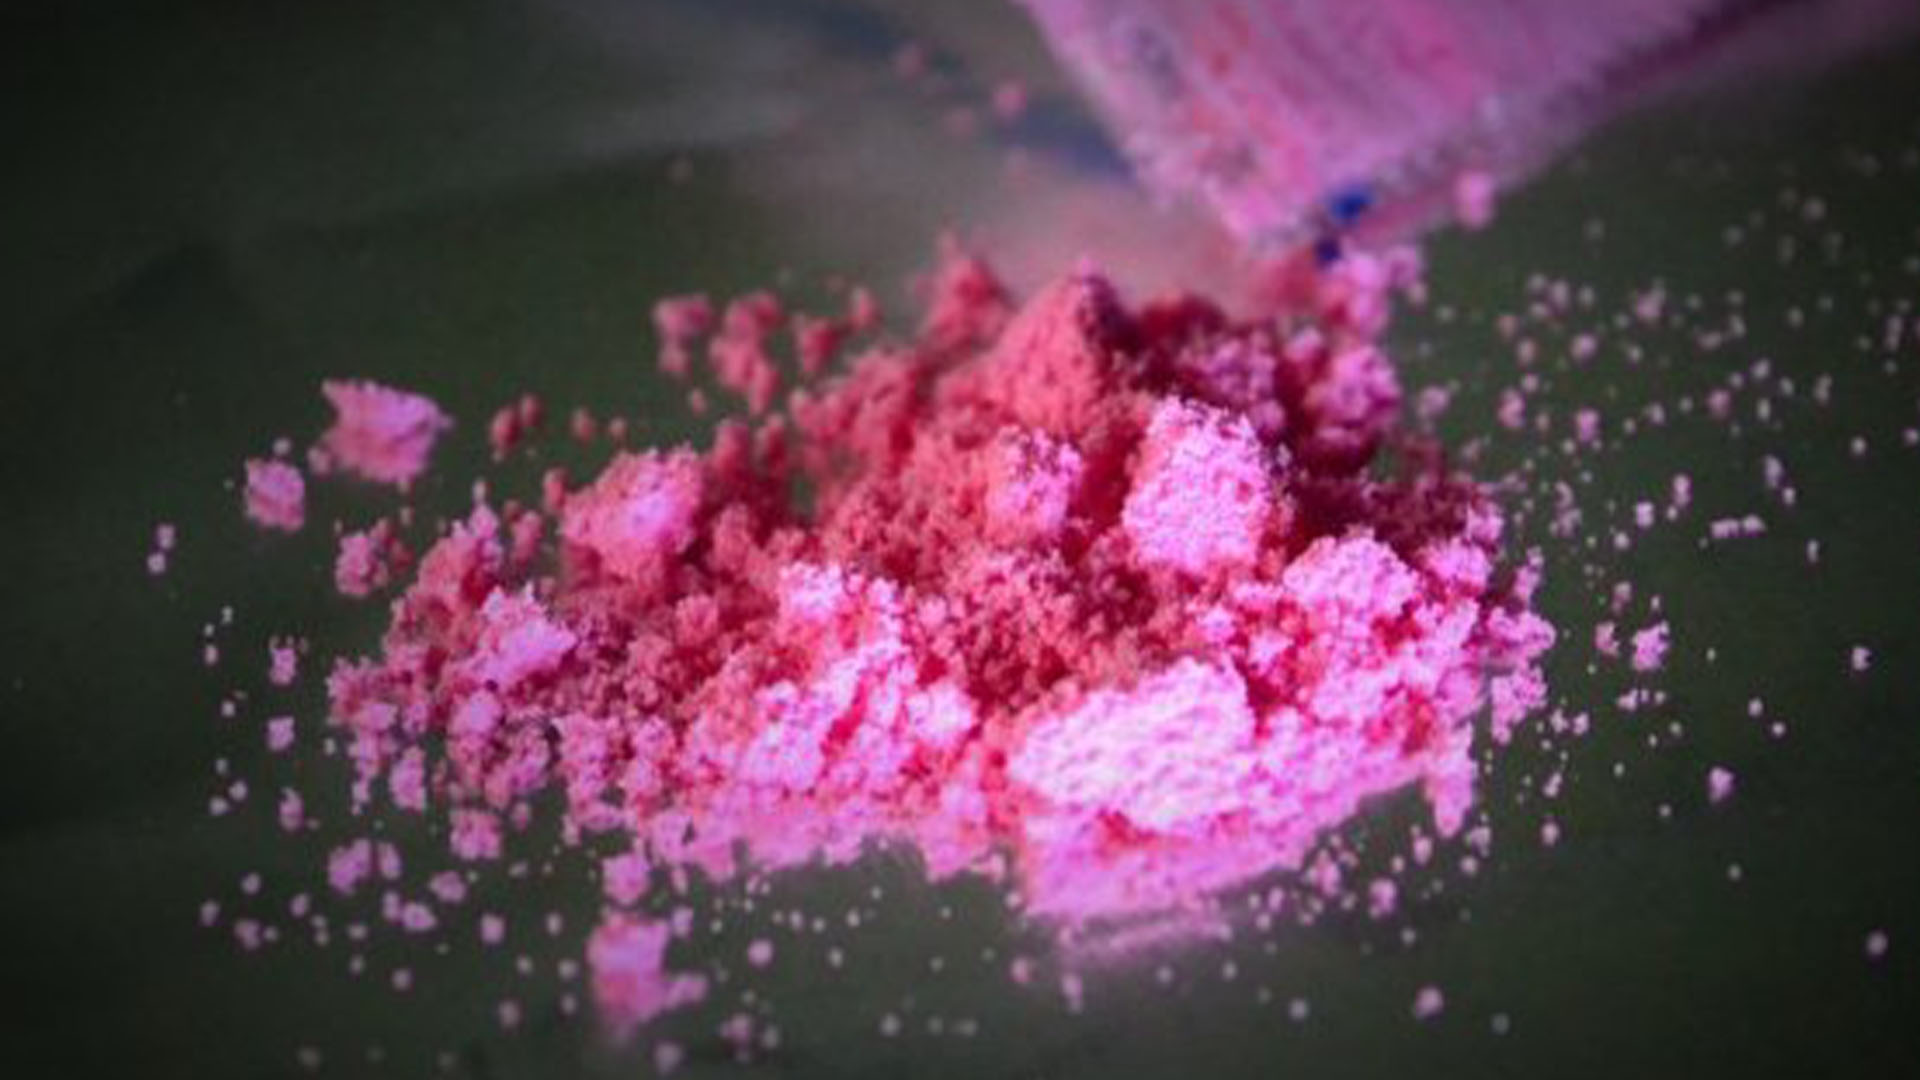 En Uruguay, la droga es conocida como "cocaína rosa", "tussi" o "la droga de los ricos" y fue creada, a nivel mundial, la década del 70′, pero resurgió en 2019 en América Latina

(Foto: Twitter@EnciclopediaUrb)